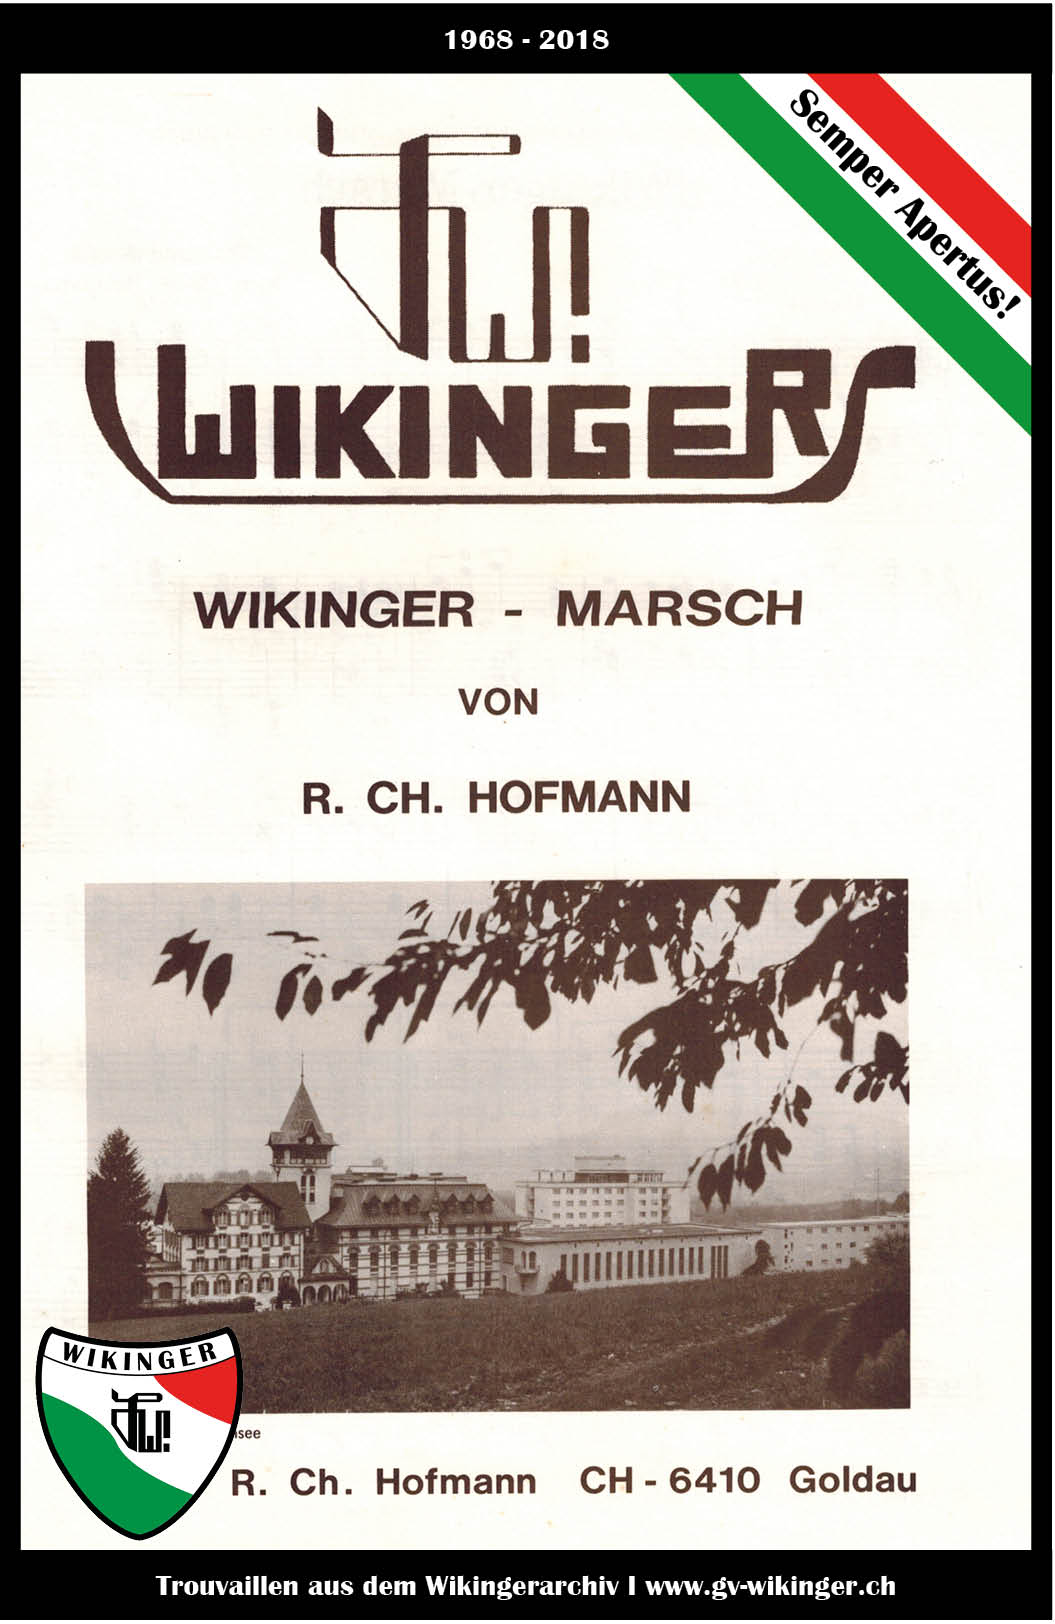 Wikinger_1968-2018_Wikingermarsch.jpg